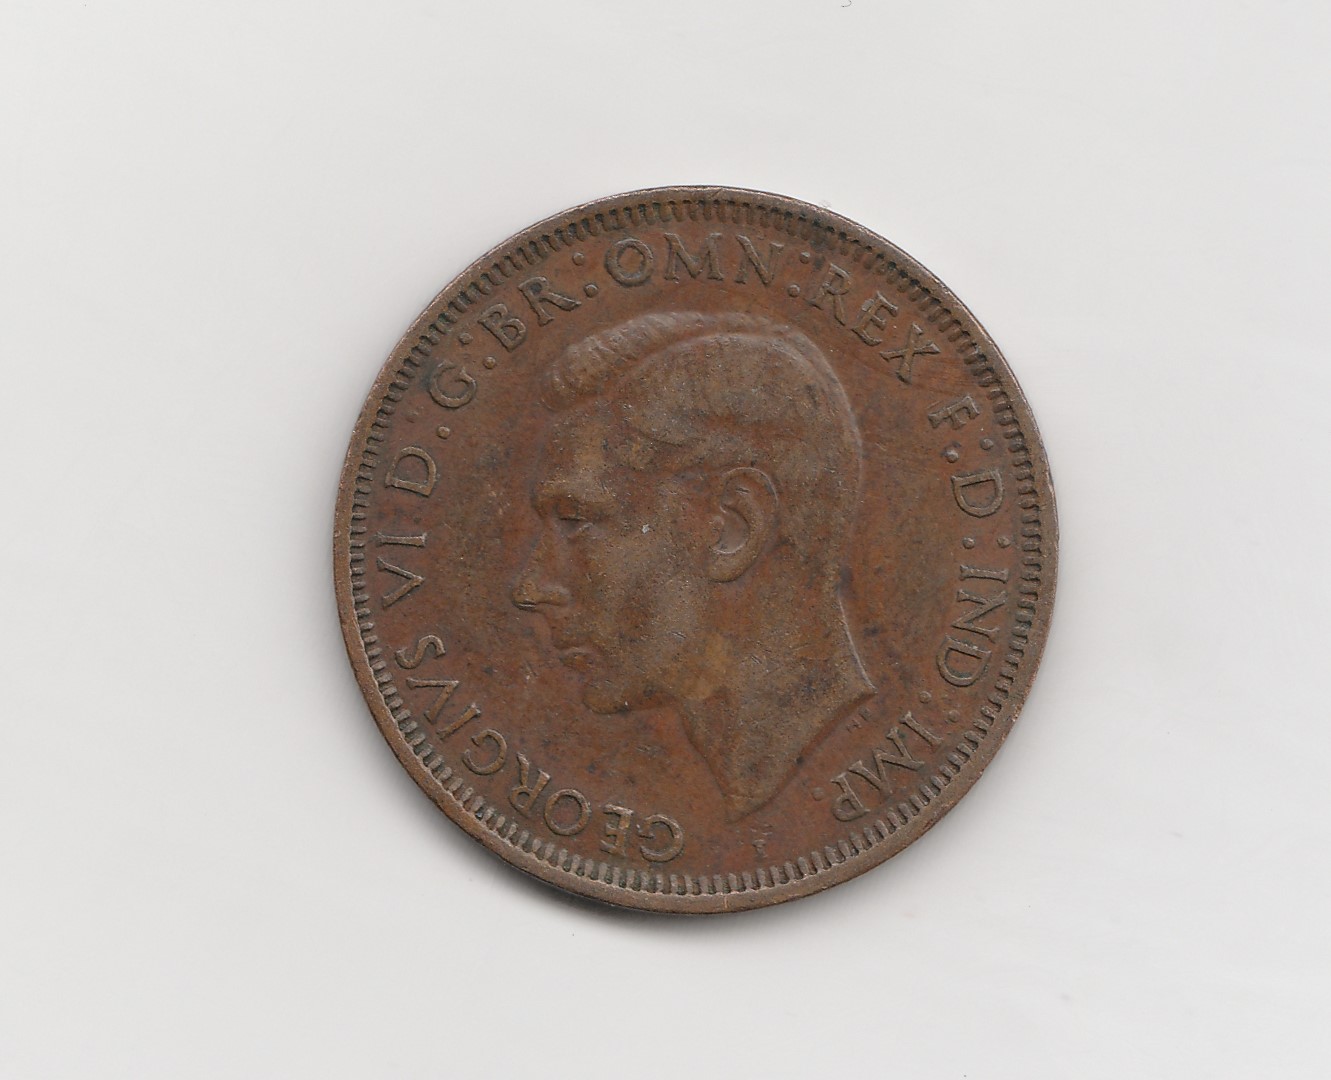  1 Penny Australien 1942  (M377)   